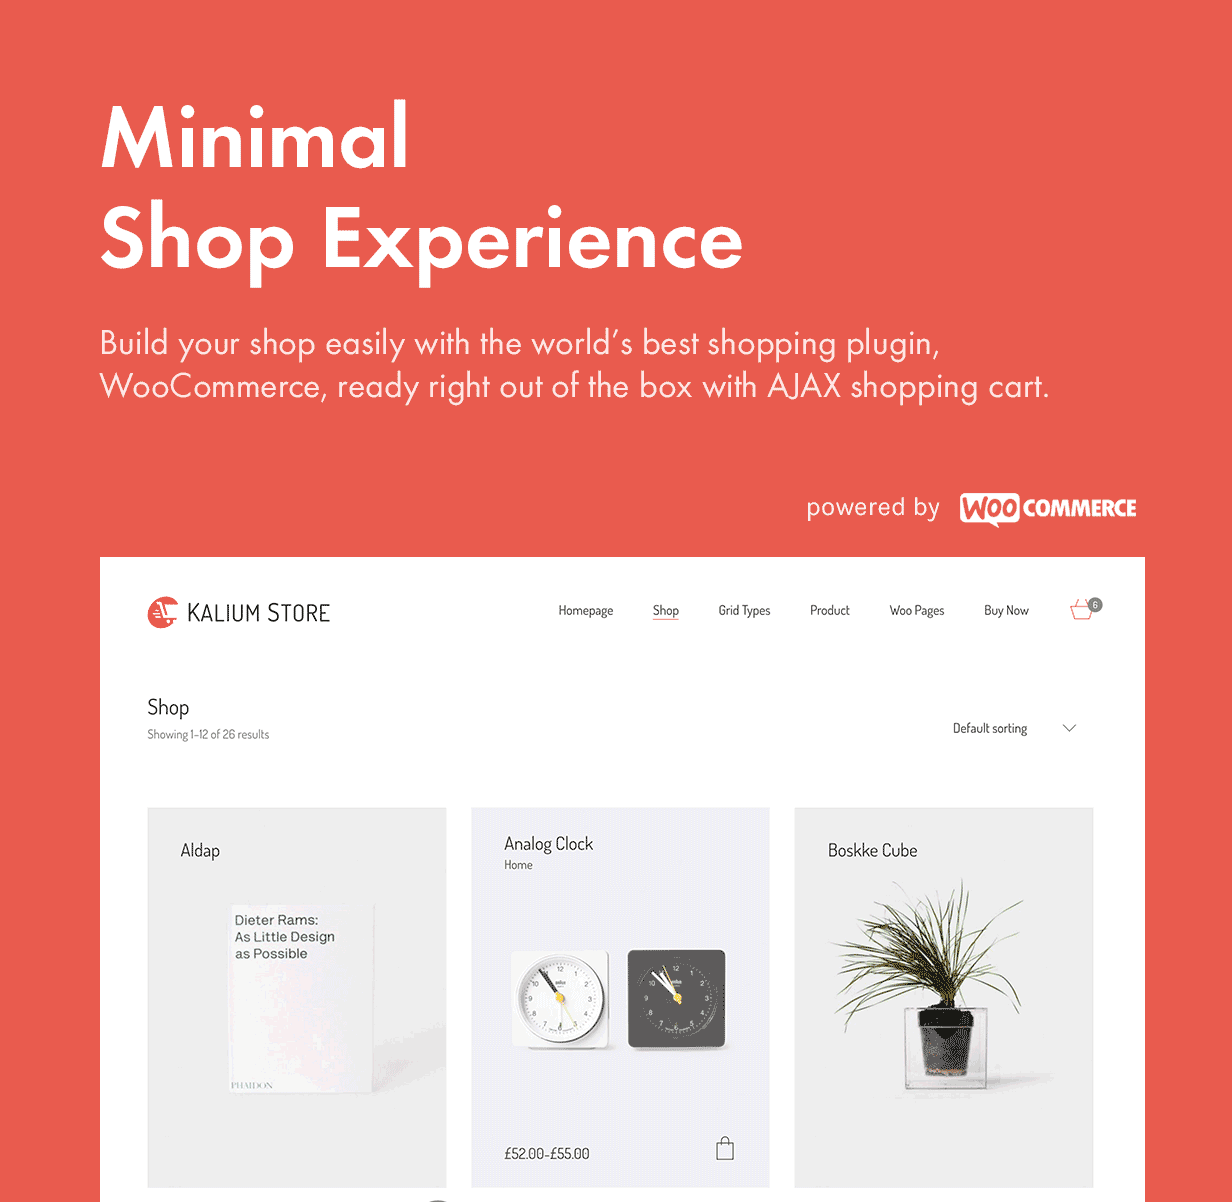 Expérience de magasin minimal et moderne (eCommerce)